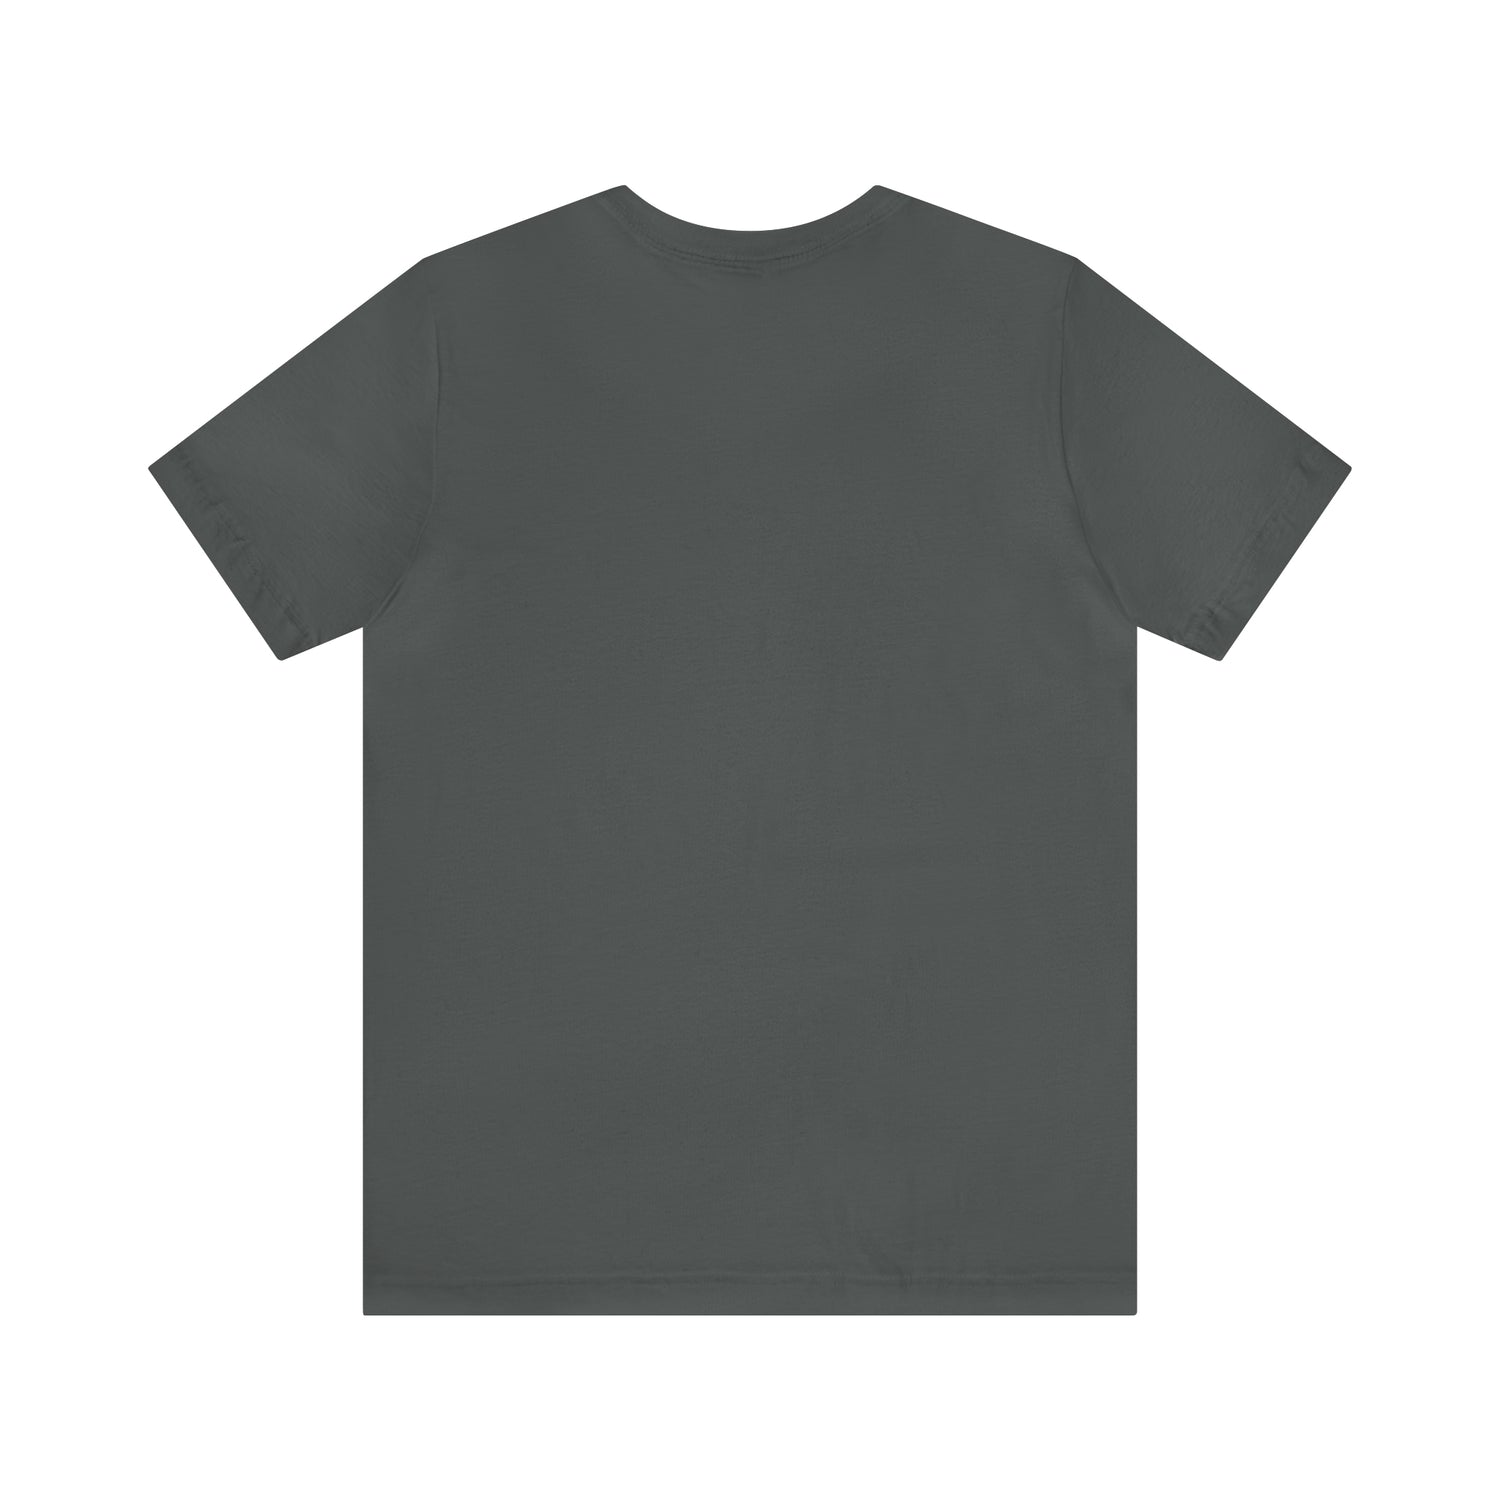 Team T-Shirt | Teamwork T-Shirt Petrova Designs